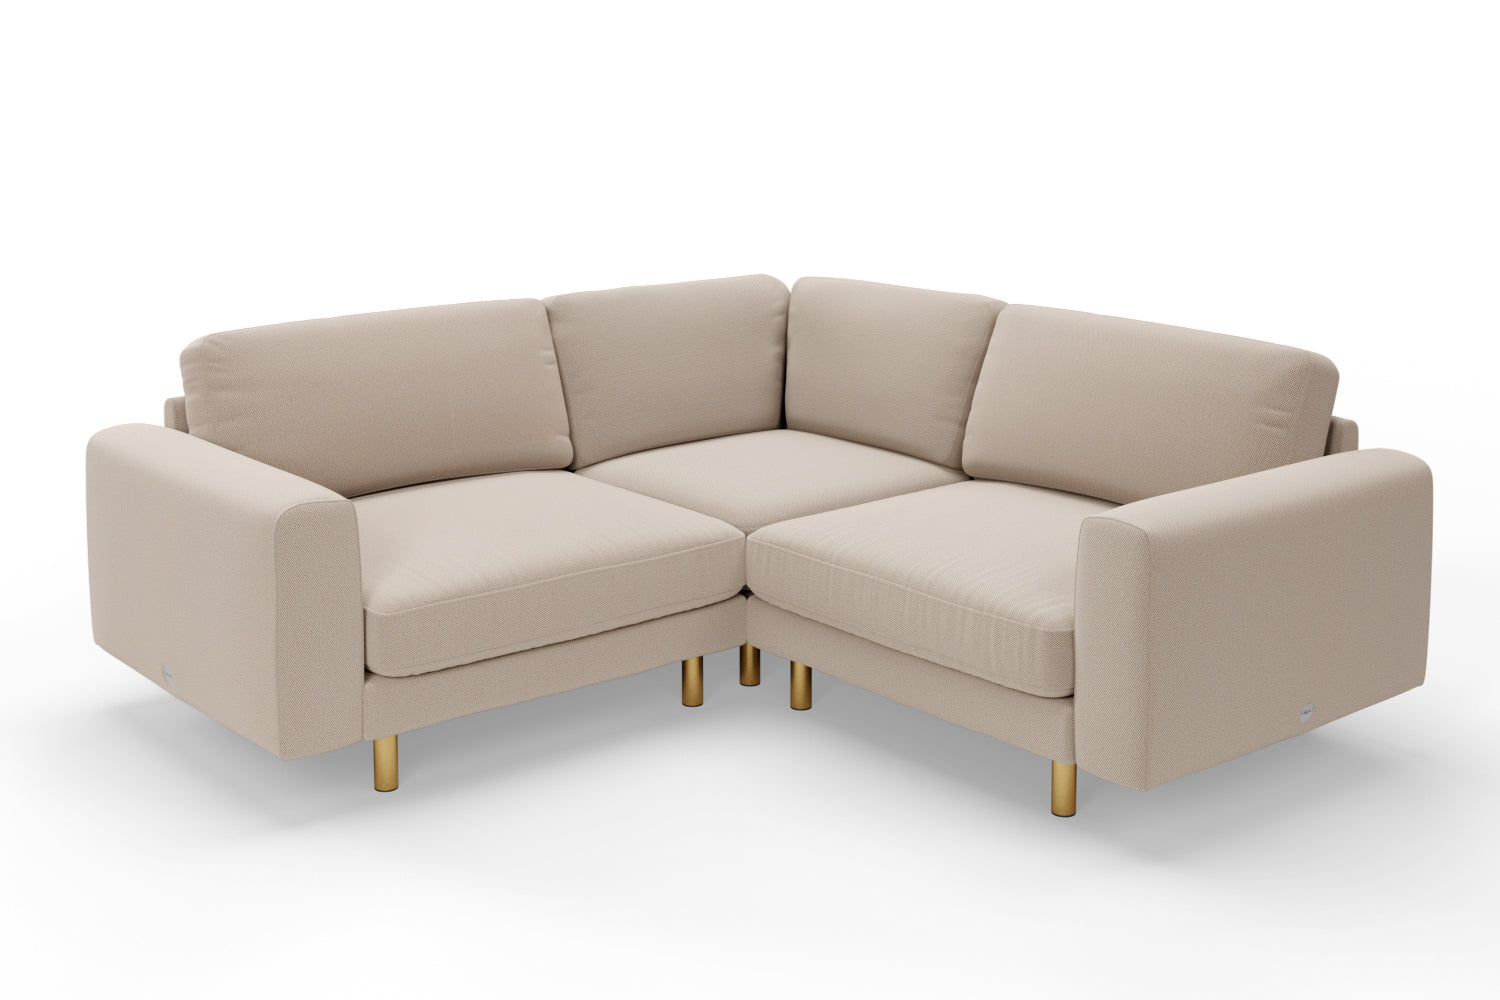 SNUG | The Big Chill Corner Sofa Small in Oatmeal